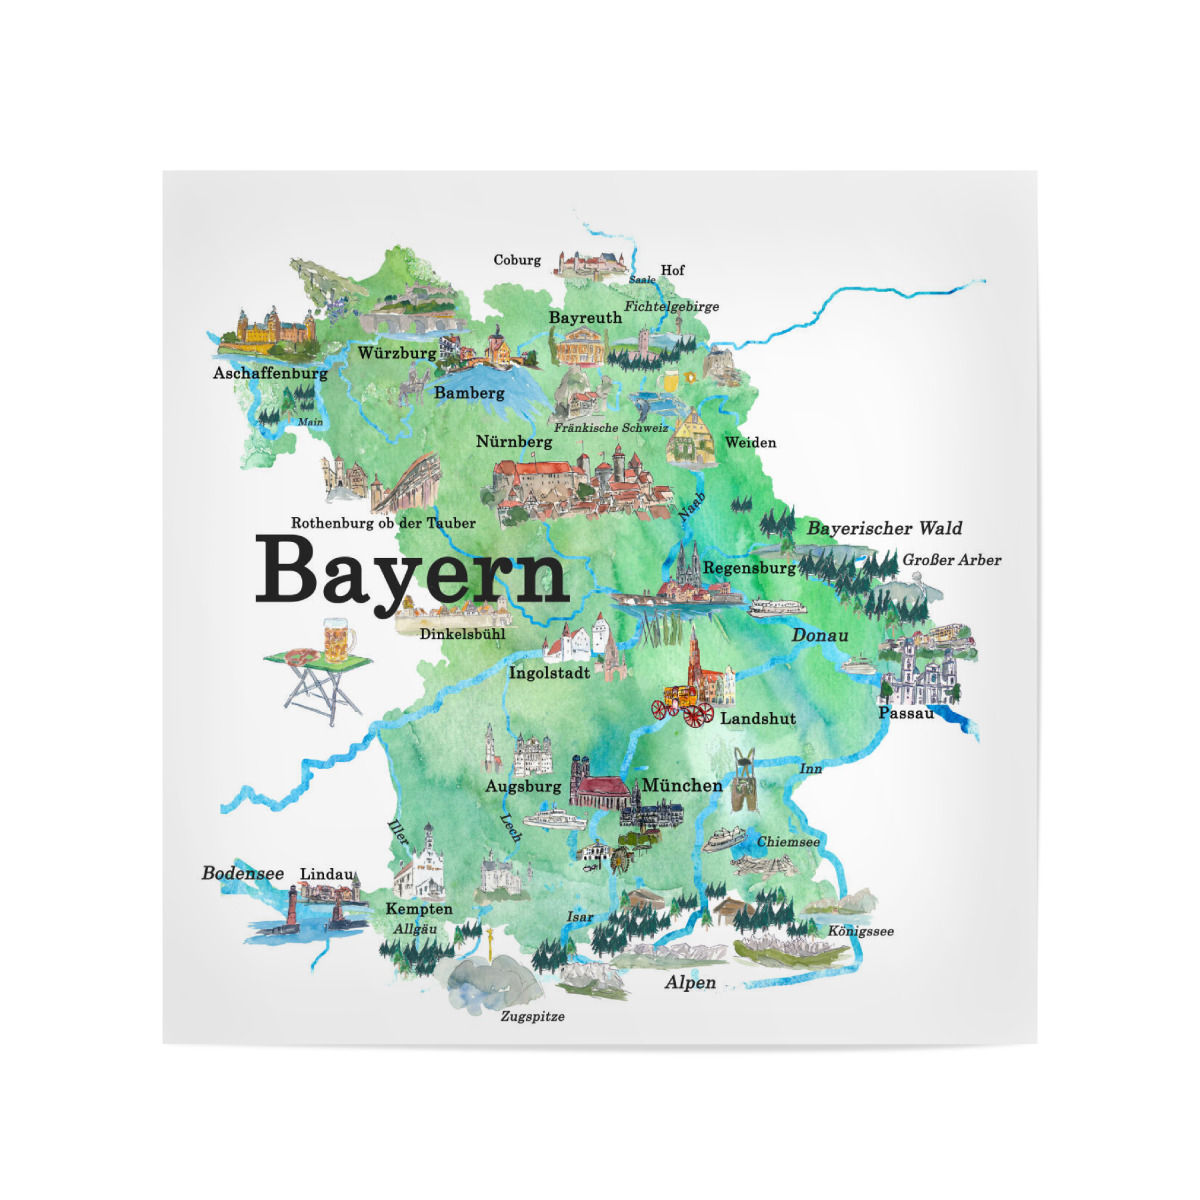 Bayern Illustrierte Karte als Poster bei artboxONE kaufen